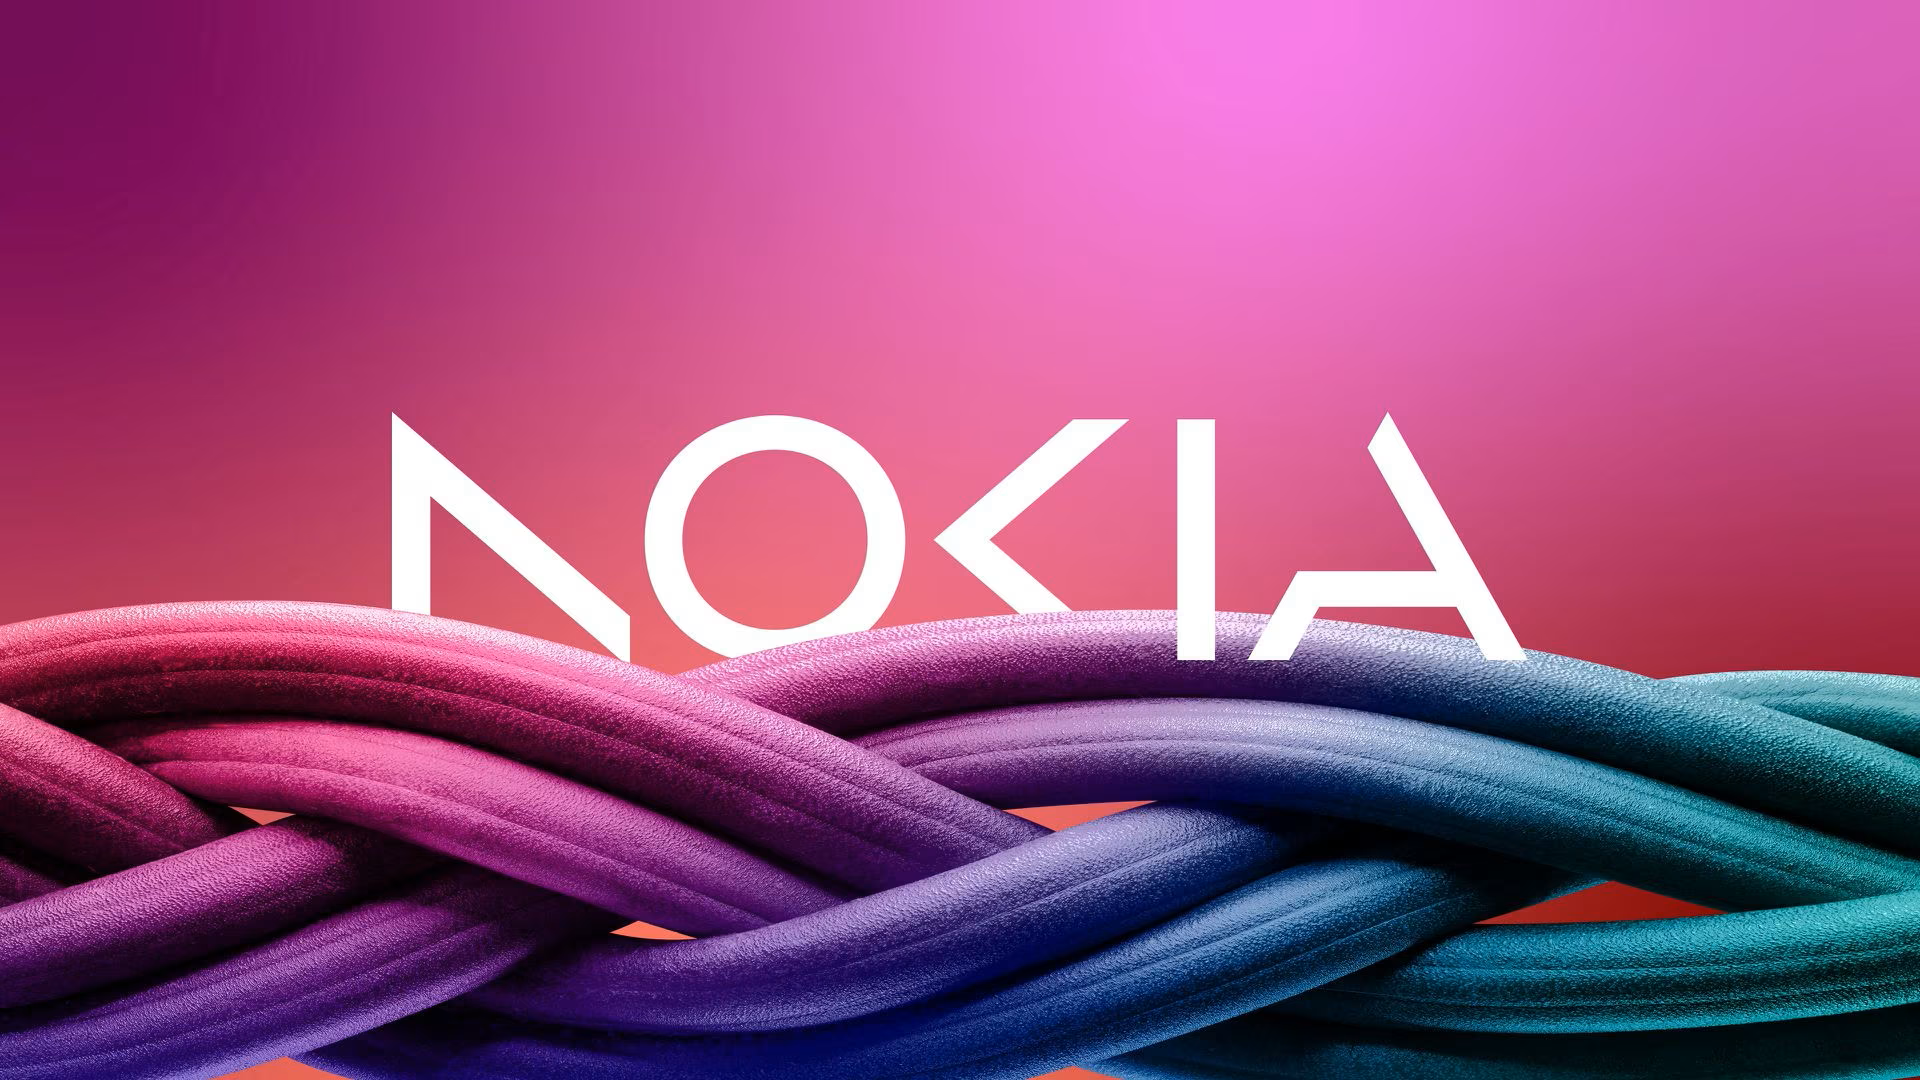 Nokia New Logo